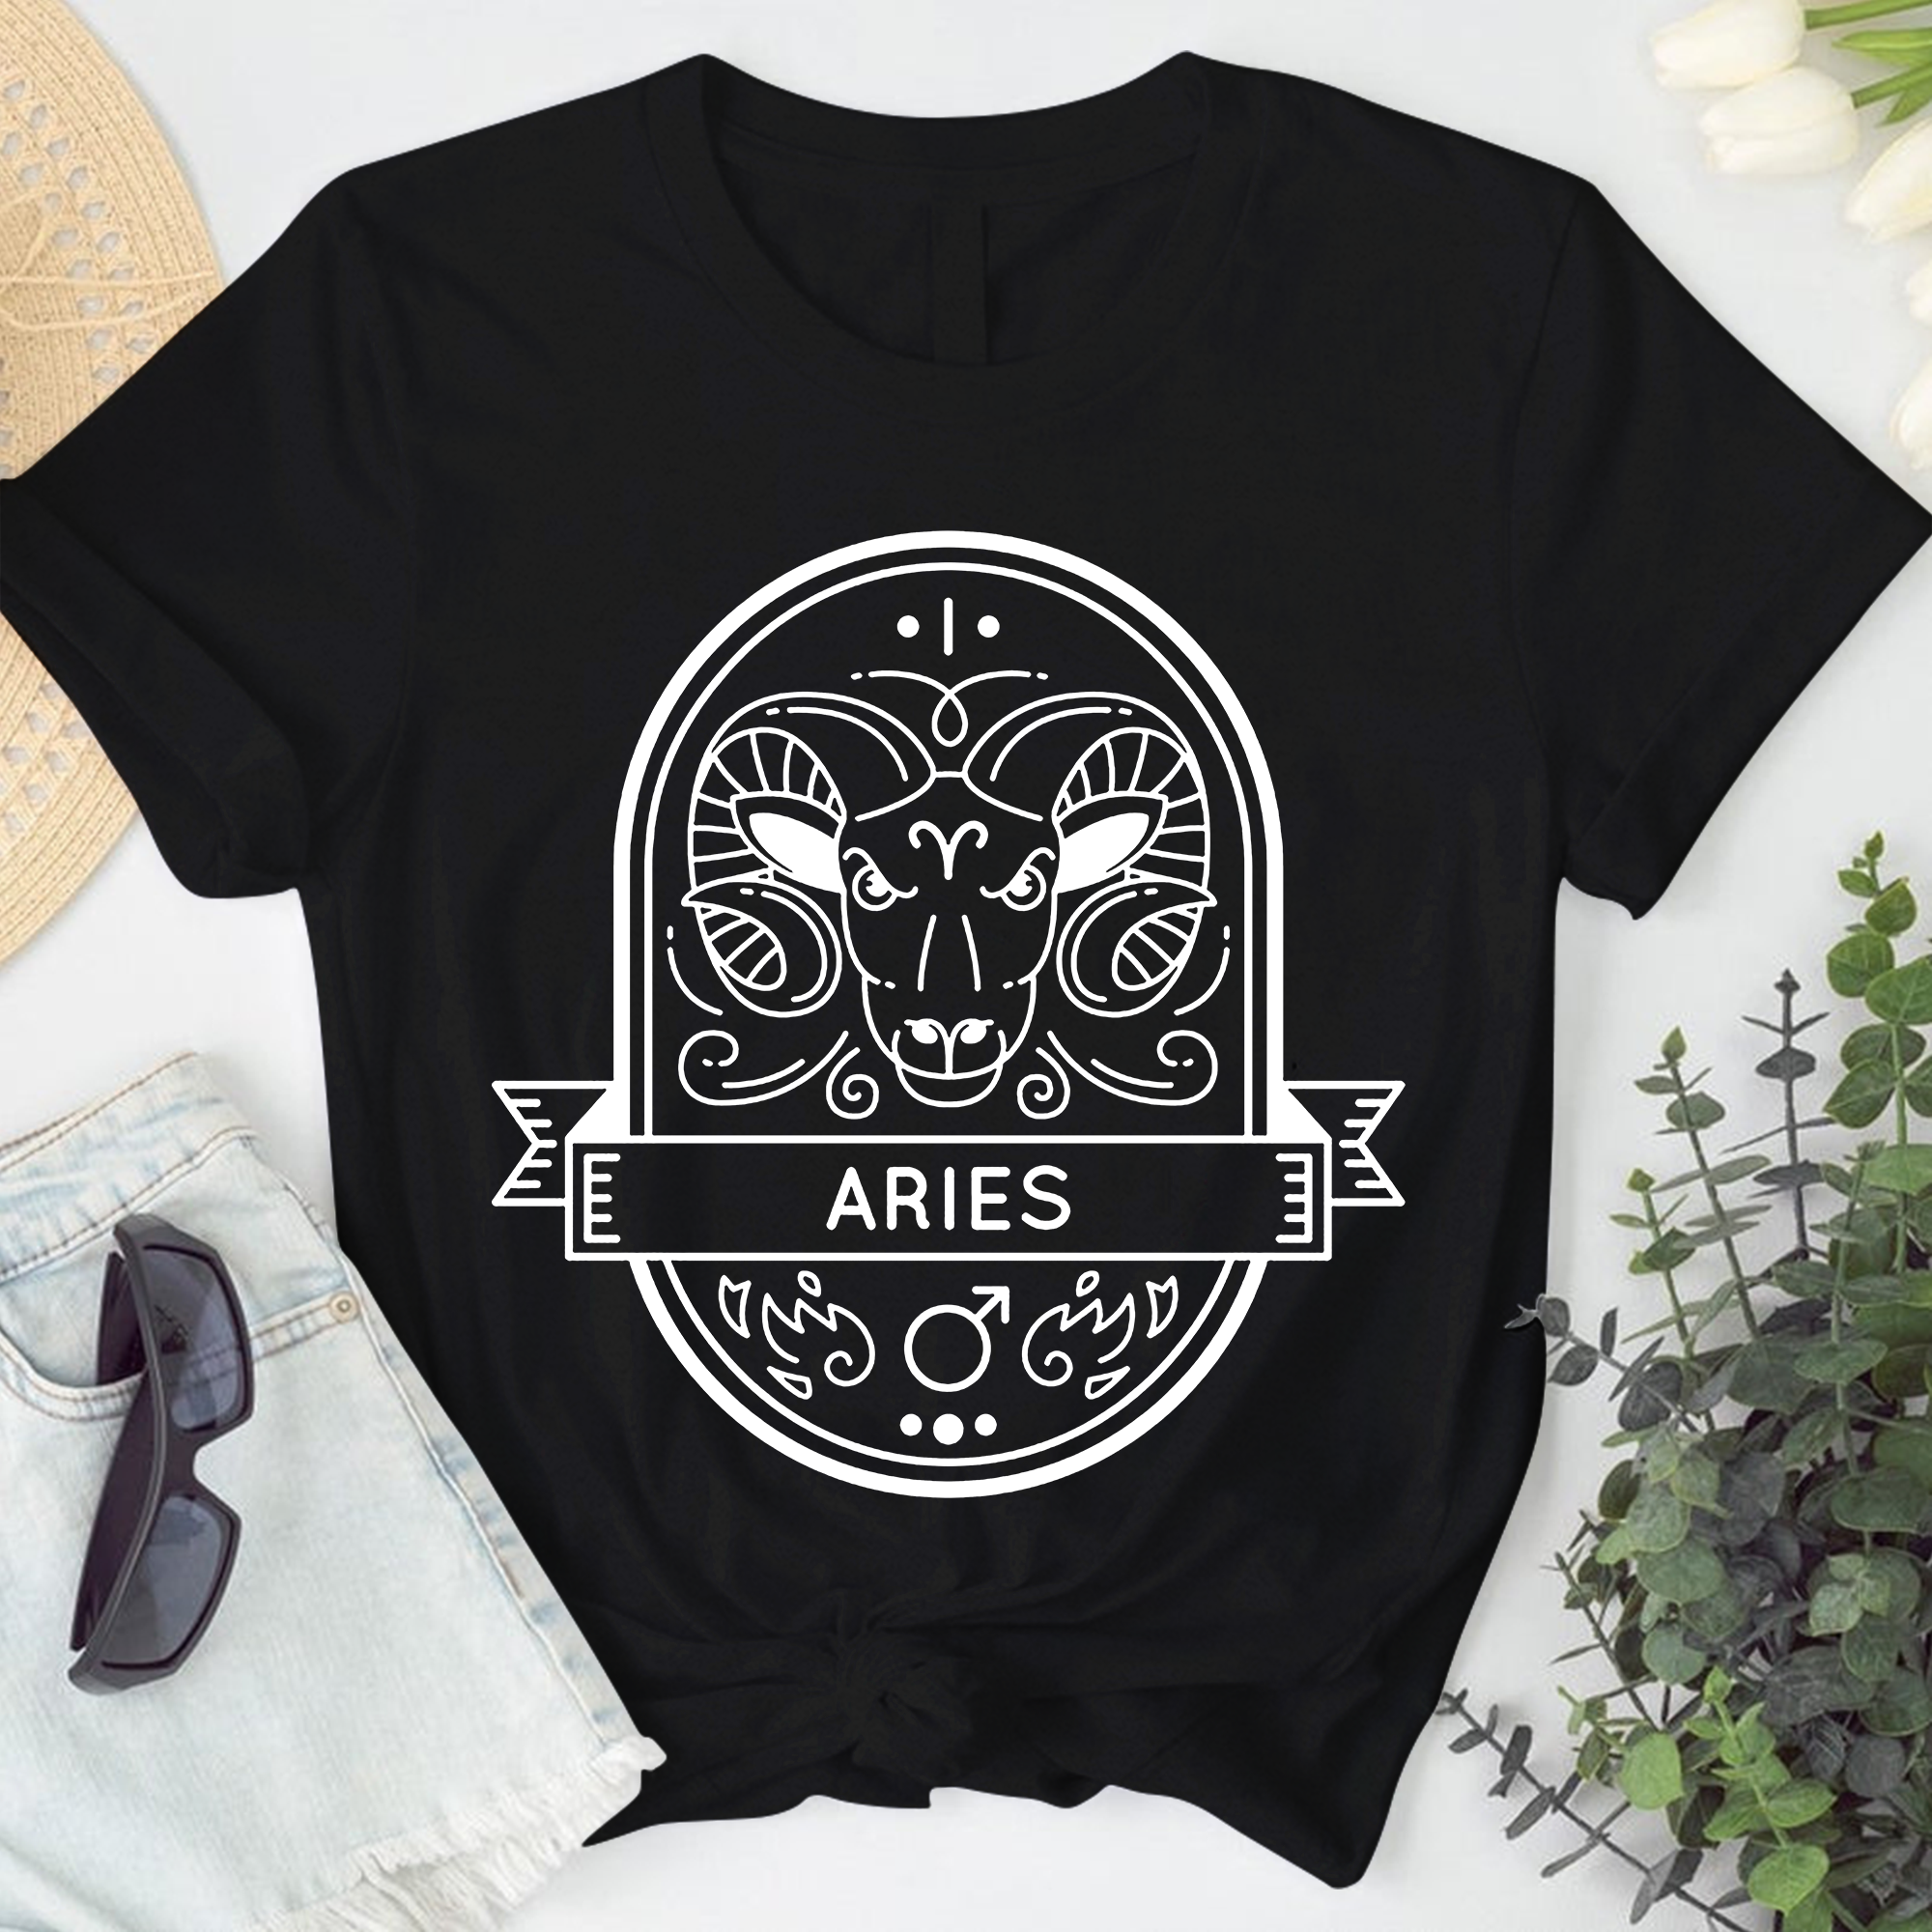 Aries Astrology Shirt, Zodiac Aries Birthday Gift, Horoscope Constellations Shirt